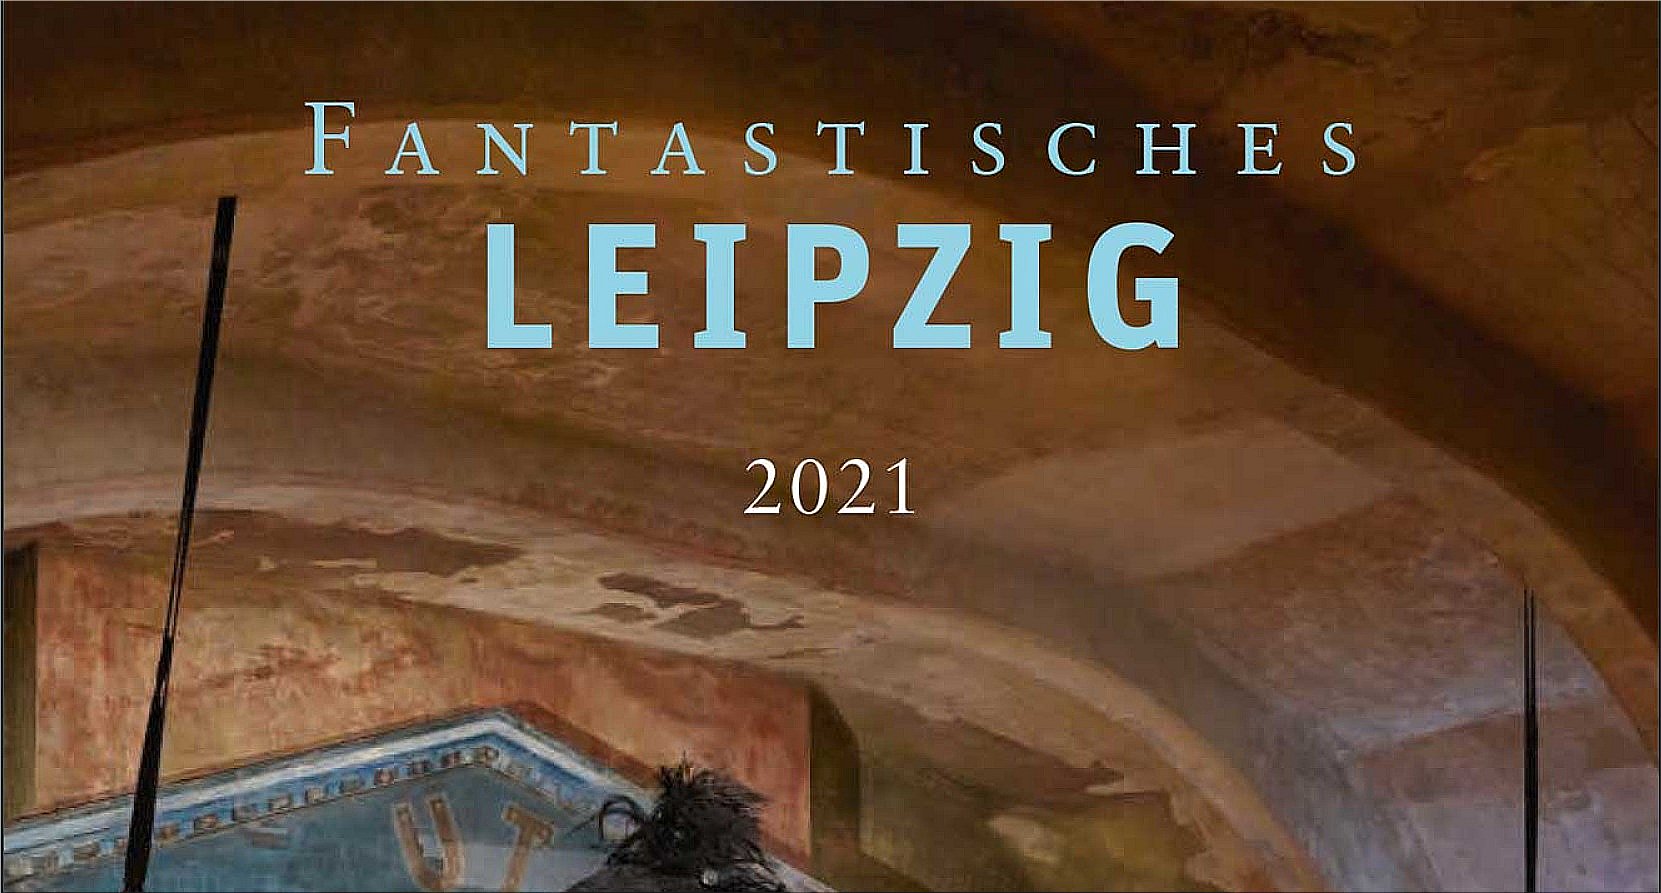 Fantastisches Leipzig photo calendar by Angela Liebich Gray Bookmarks